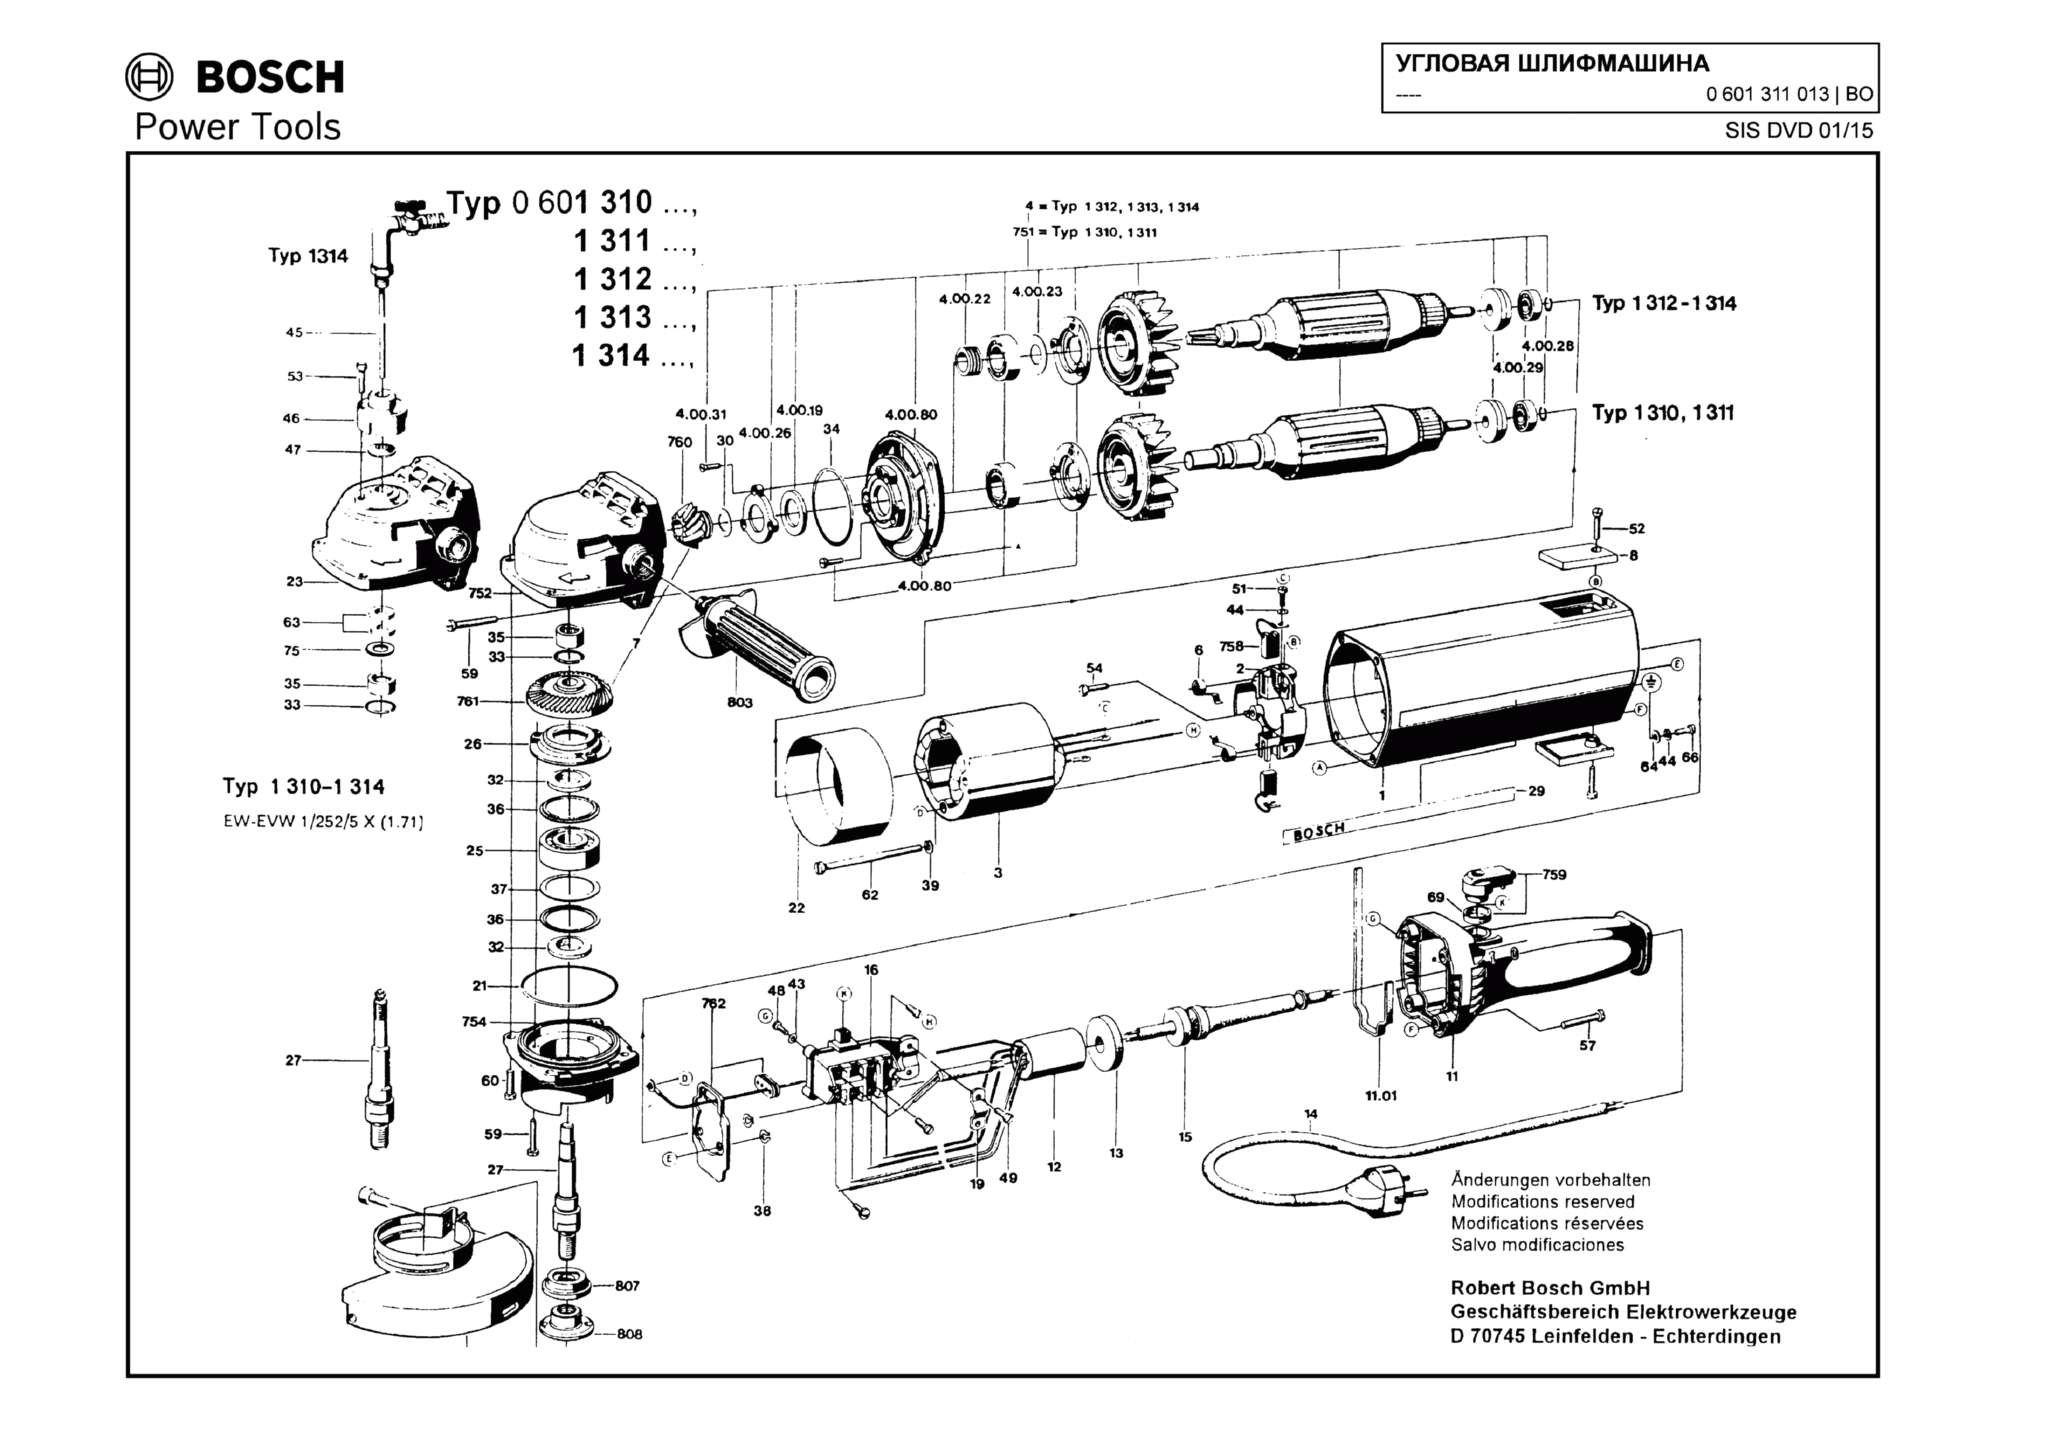 Запчасти, схема и деталировка Bosch (ТИП 0601311013)